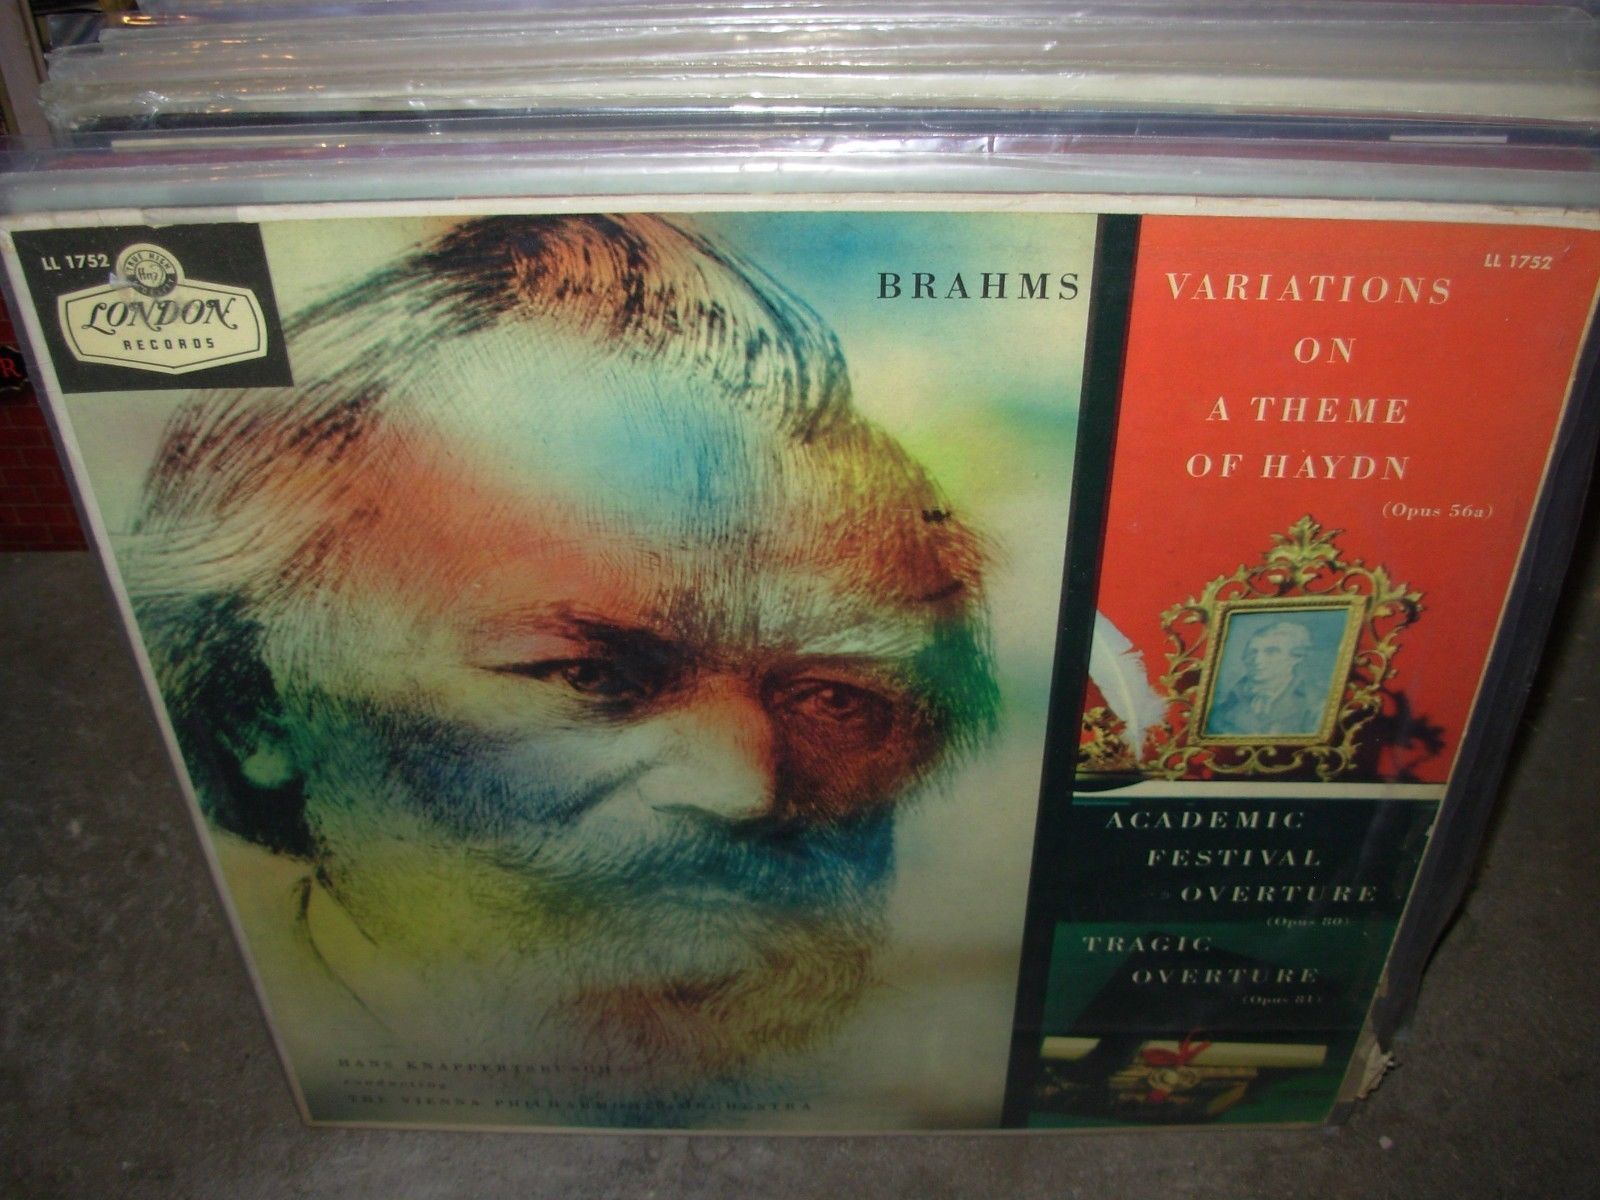 ブラームス 「大学祝典序曲」「ハイドン変奏曲」他 クナッパーツブッシュ／ウィーンpo 1957年録音: クラシック音楽 名曲・名盤CD求めて三千枚